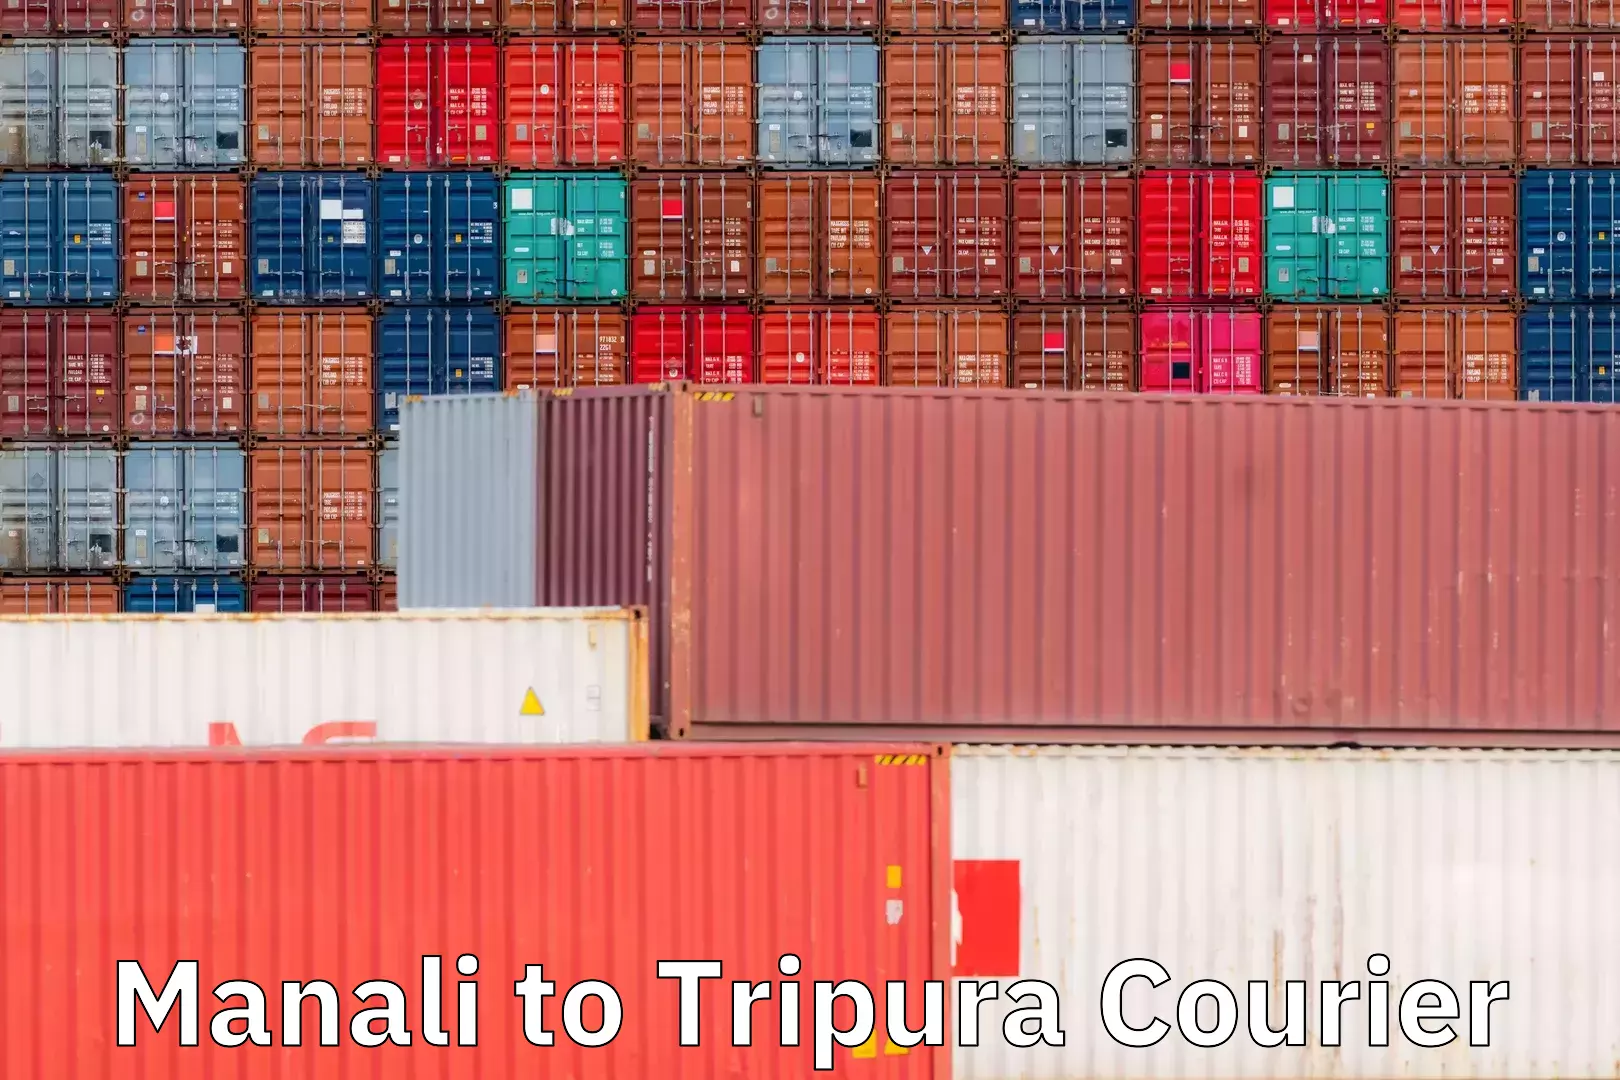 Courier service comparison in Manali to Tripura